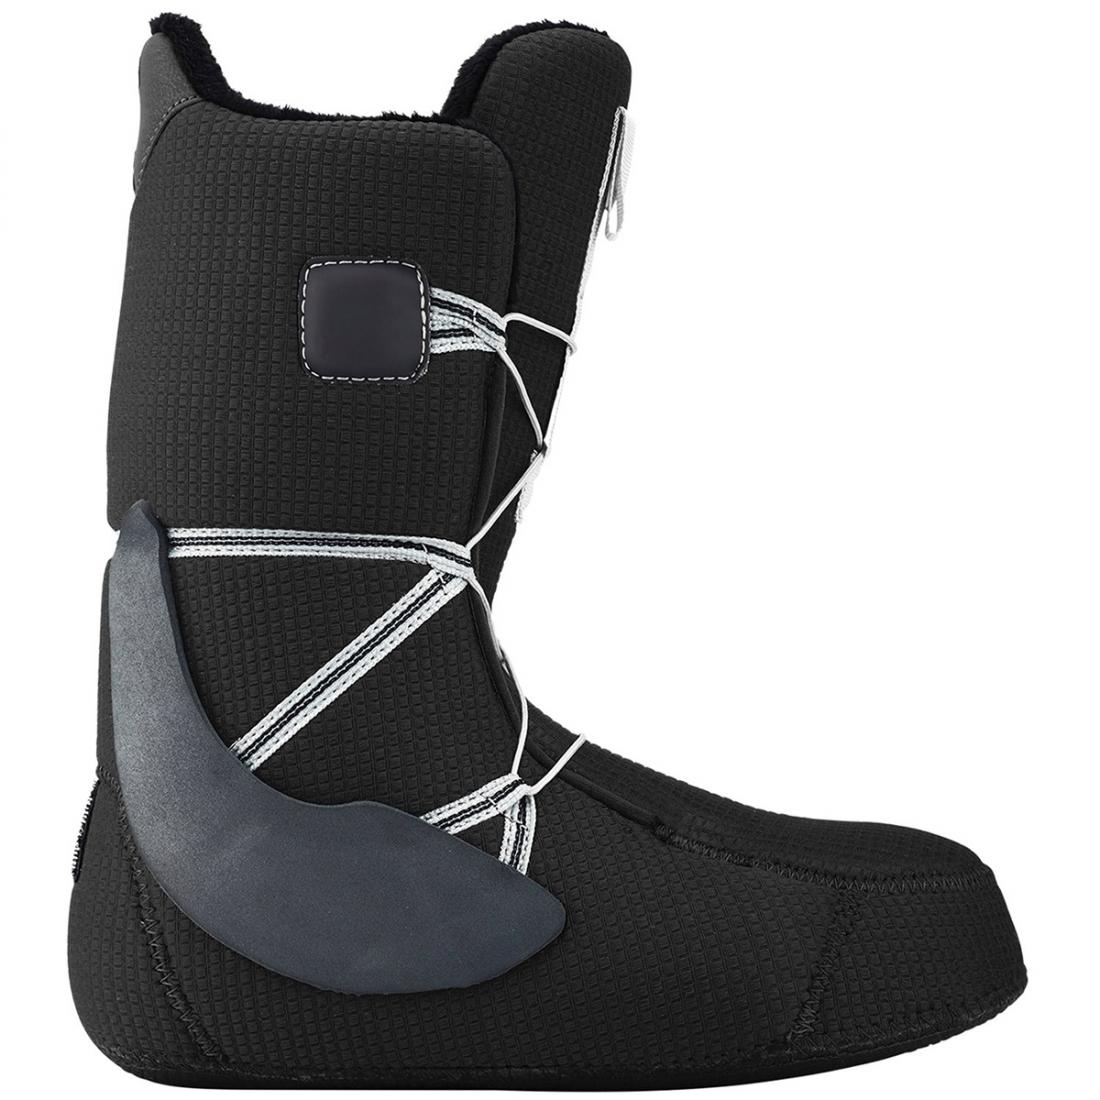 Ботинки для сноуборда Burton Moto купить в Boardshop №1